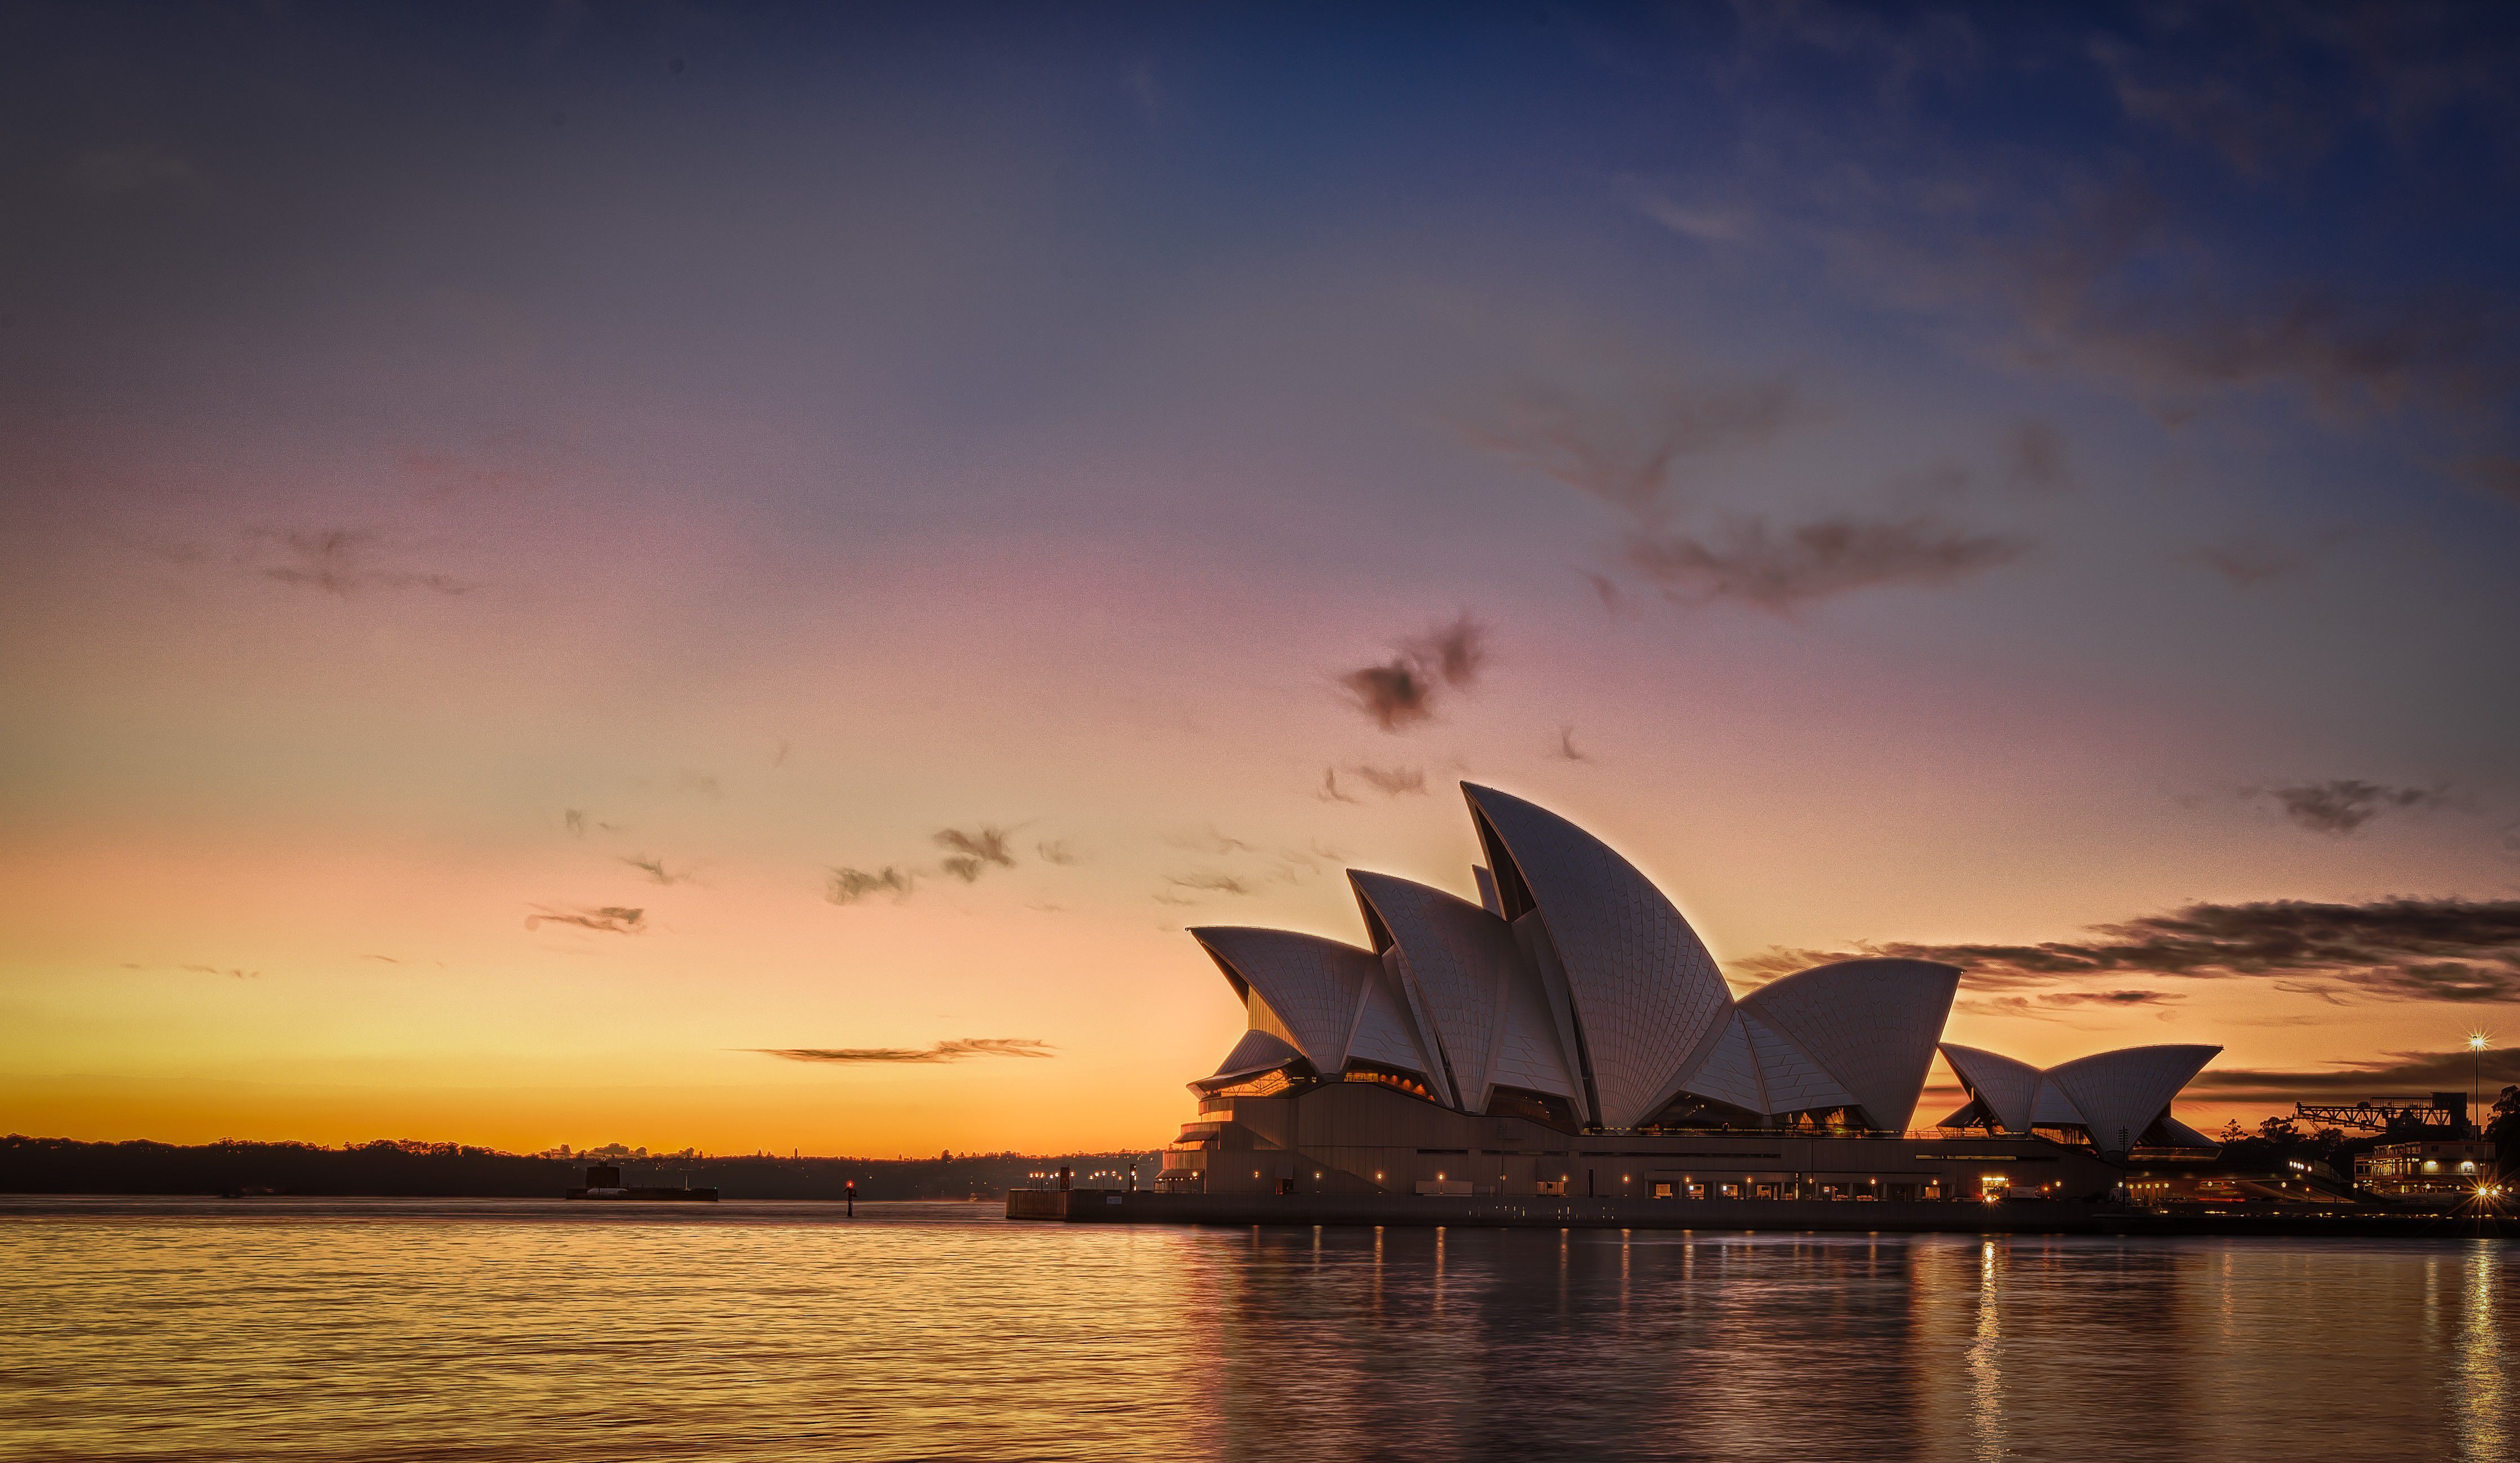 オーストラリア・シドニーのオペラハウスを観光しよう！美しい構造にうっとり♪